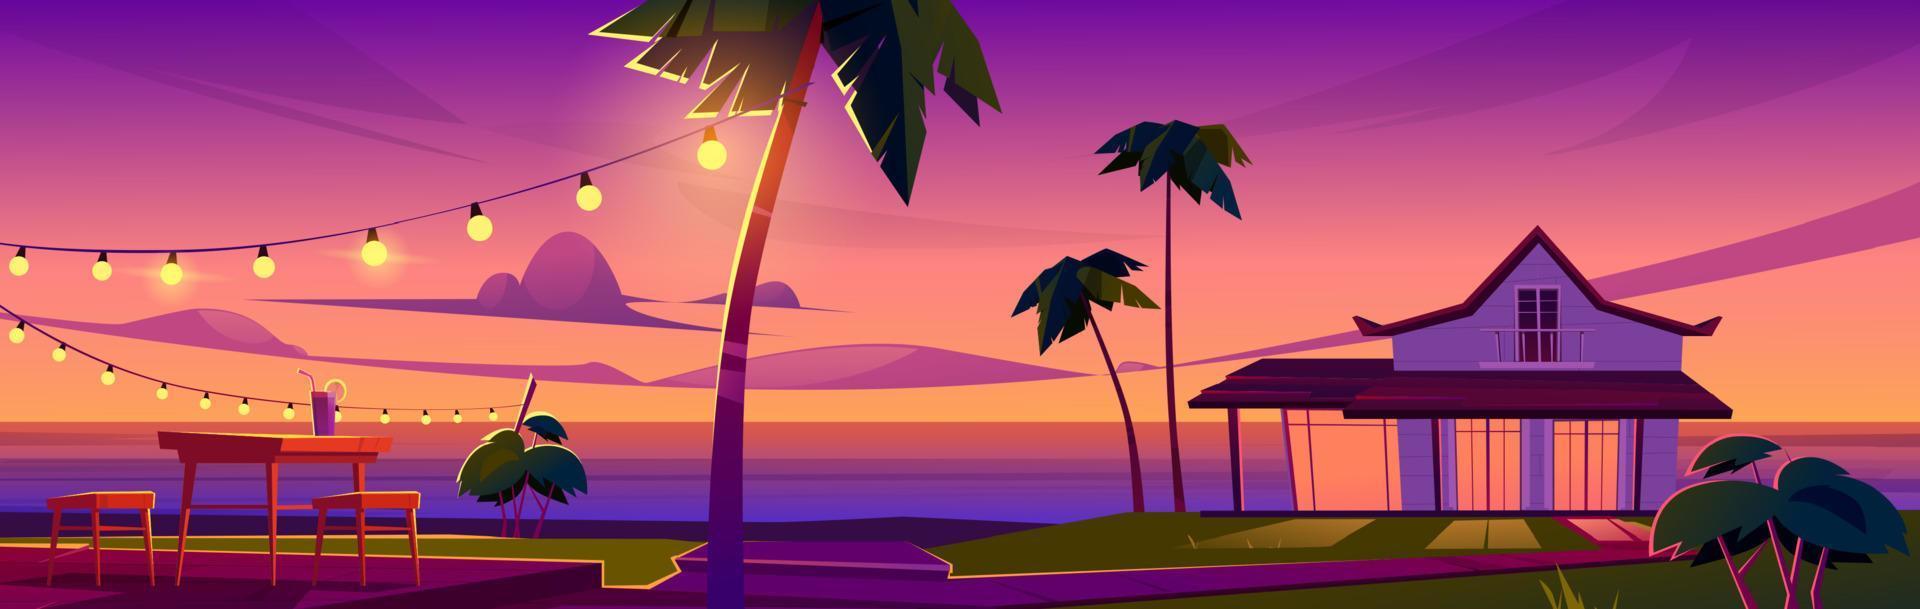 zomer tropisch landschap met bungalow Bij zonsondergang vector